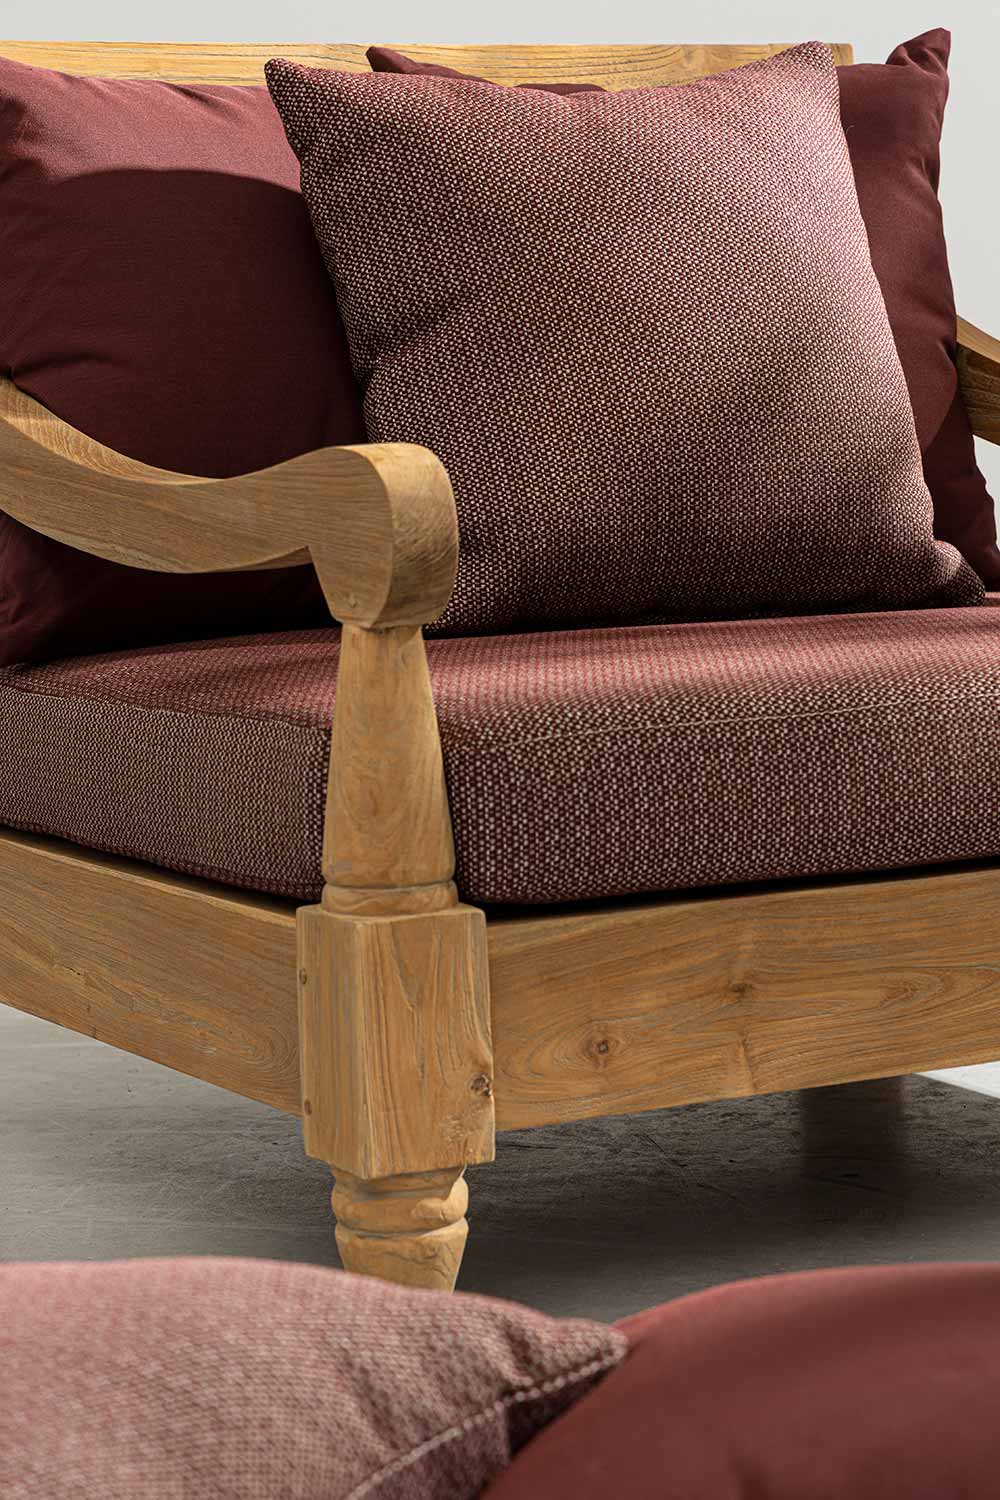 Keleti stílusú teakfa fotel hátoldala bordó színű ülő- és hátpárnákkal.